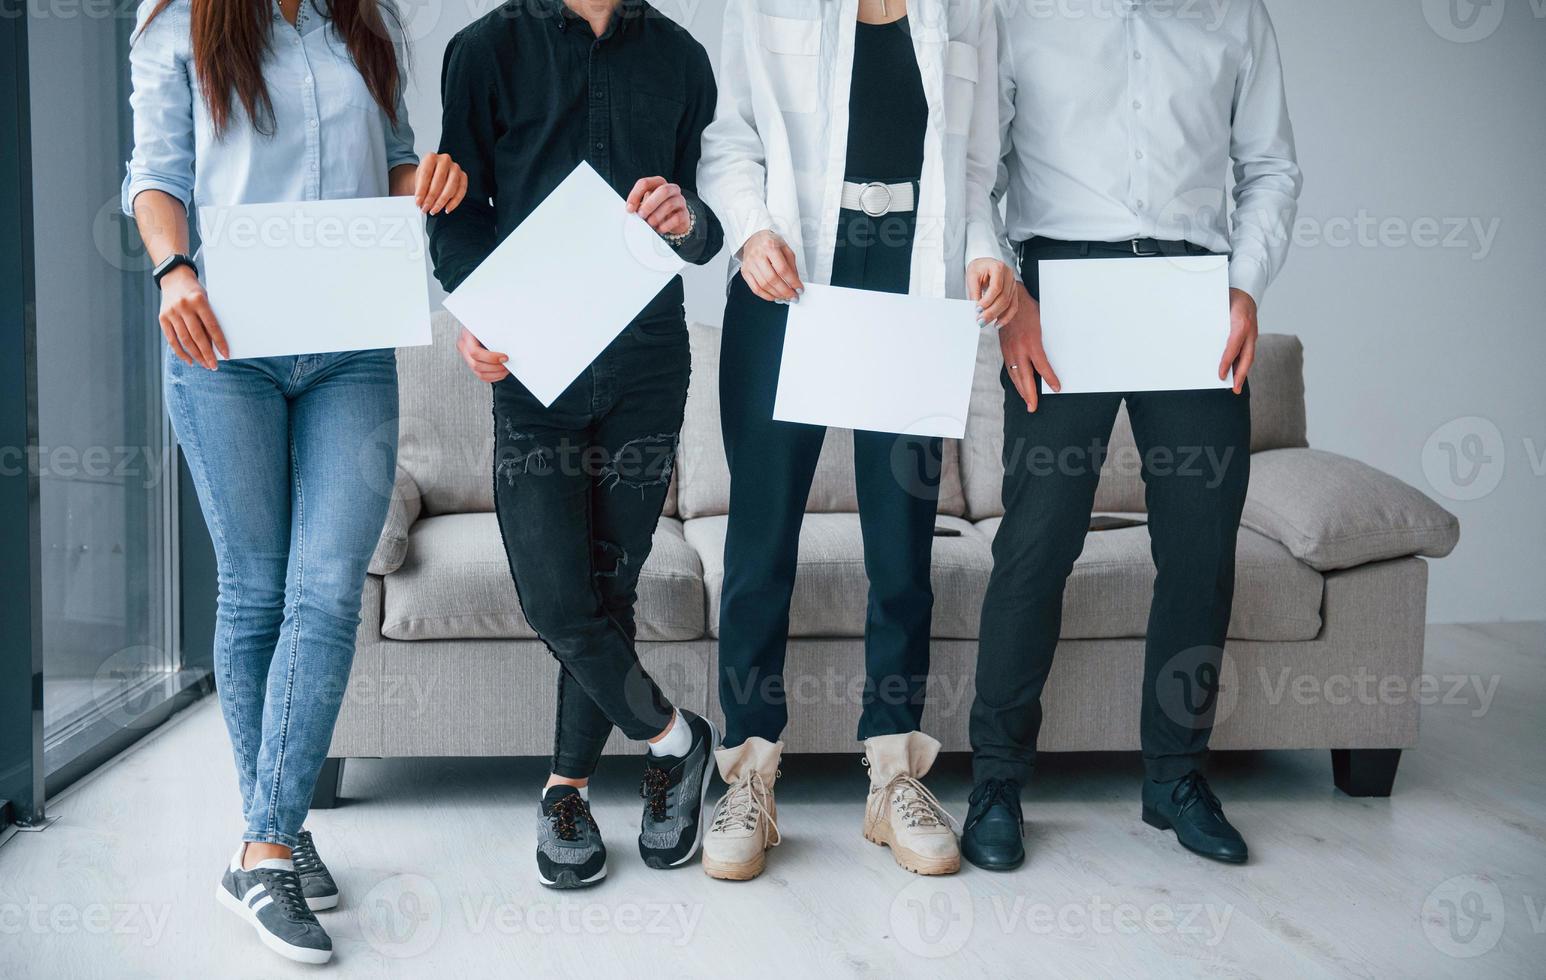 voorkant visie van jong groep van vrienden dat Holding leeg papieren in handen foto